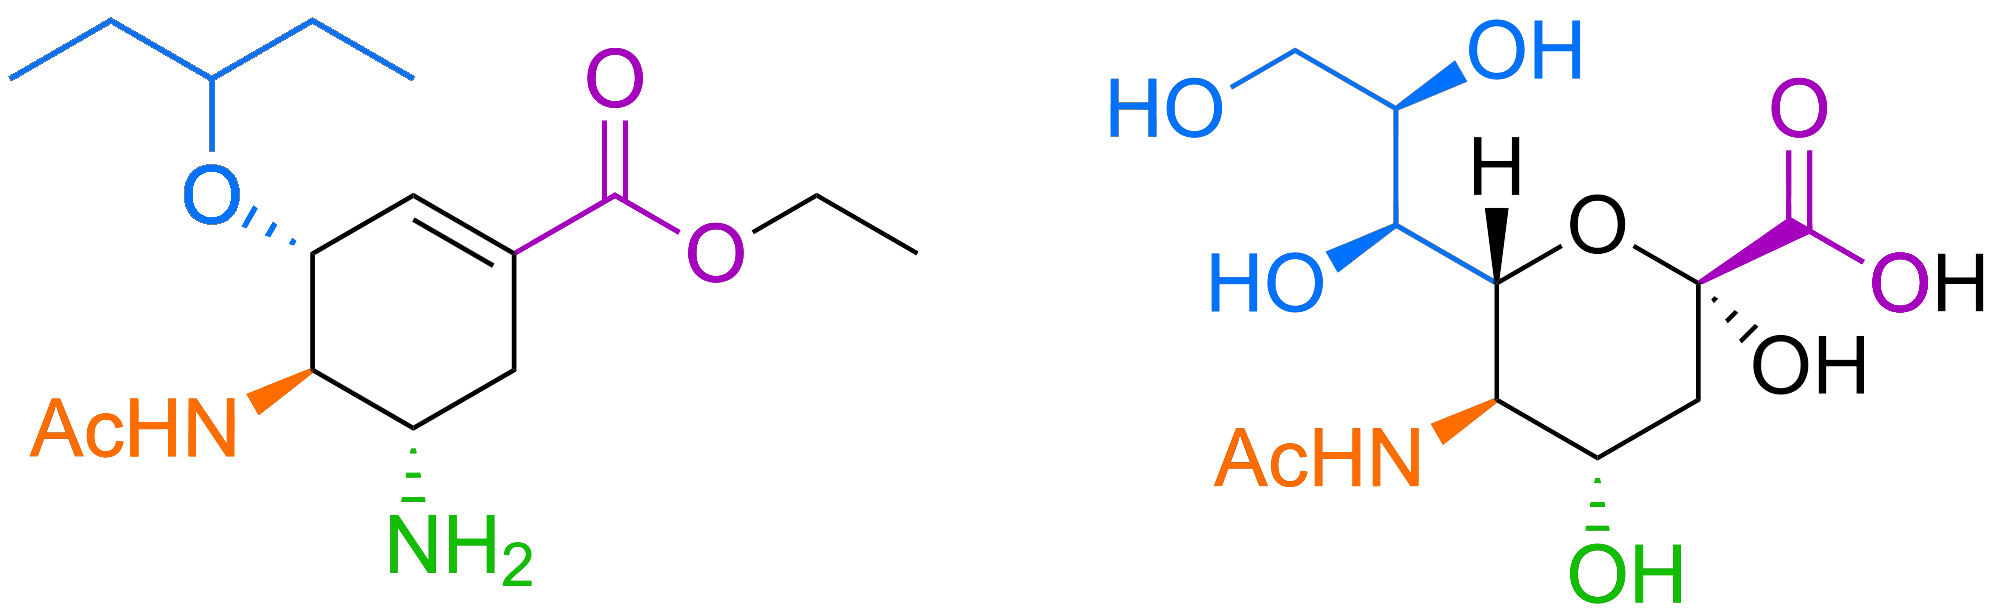 Estrutura química do antiviral Tamiflu (à esquerda), usado contra o vírus da gripe, e do ácido siálico, um açúcar que faz parte do revestimento de glicano de nossas células (à direita).